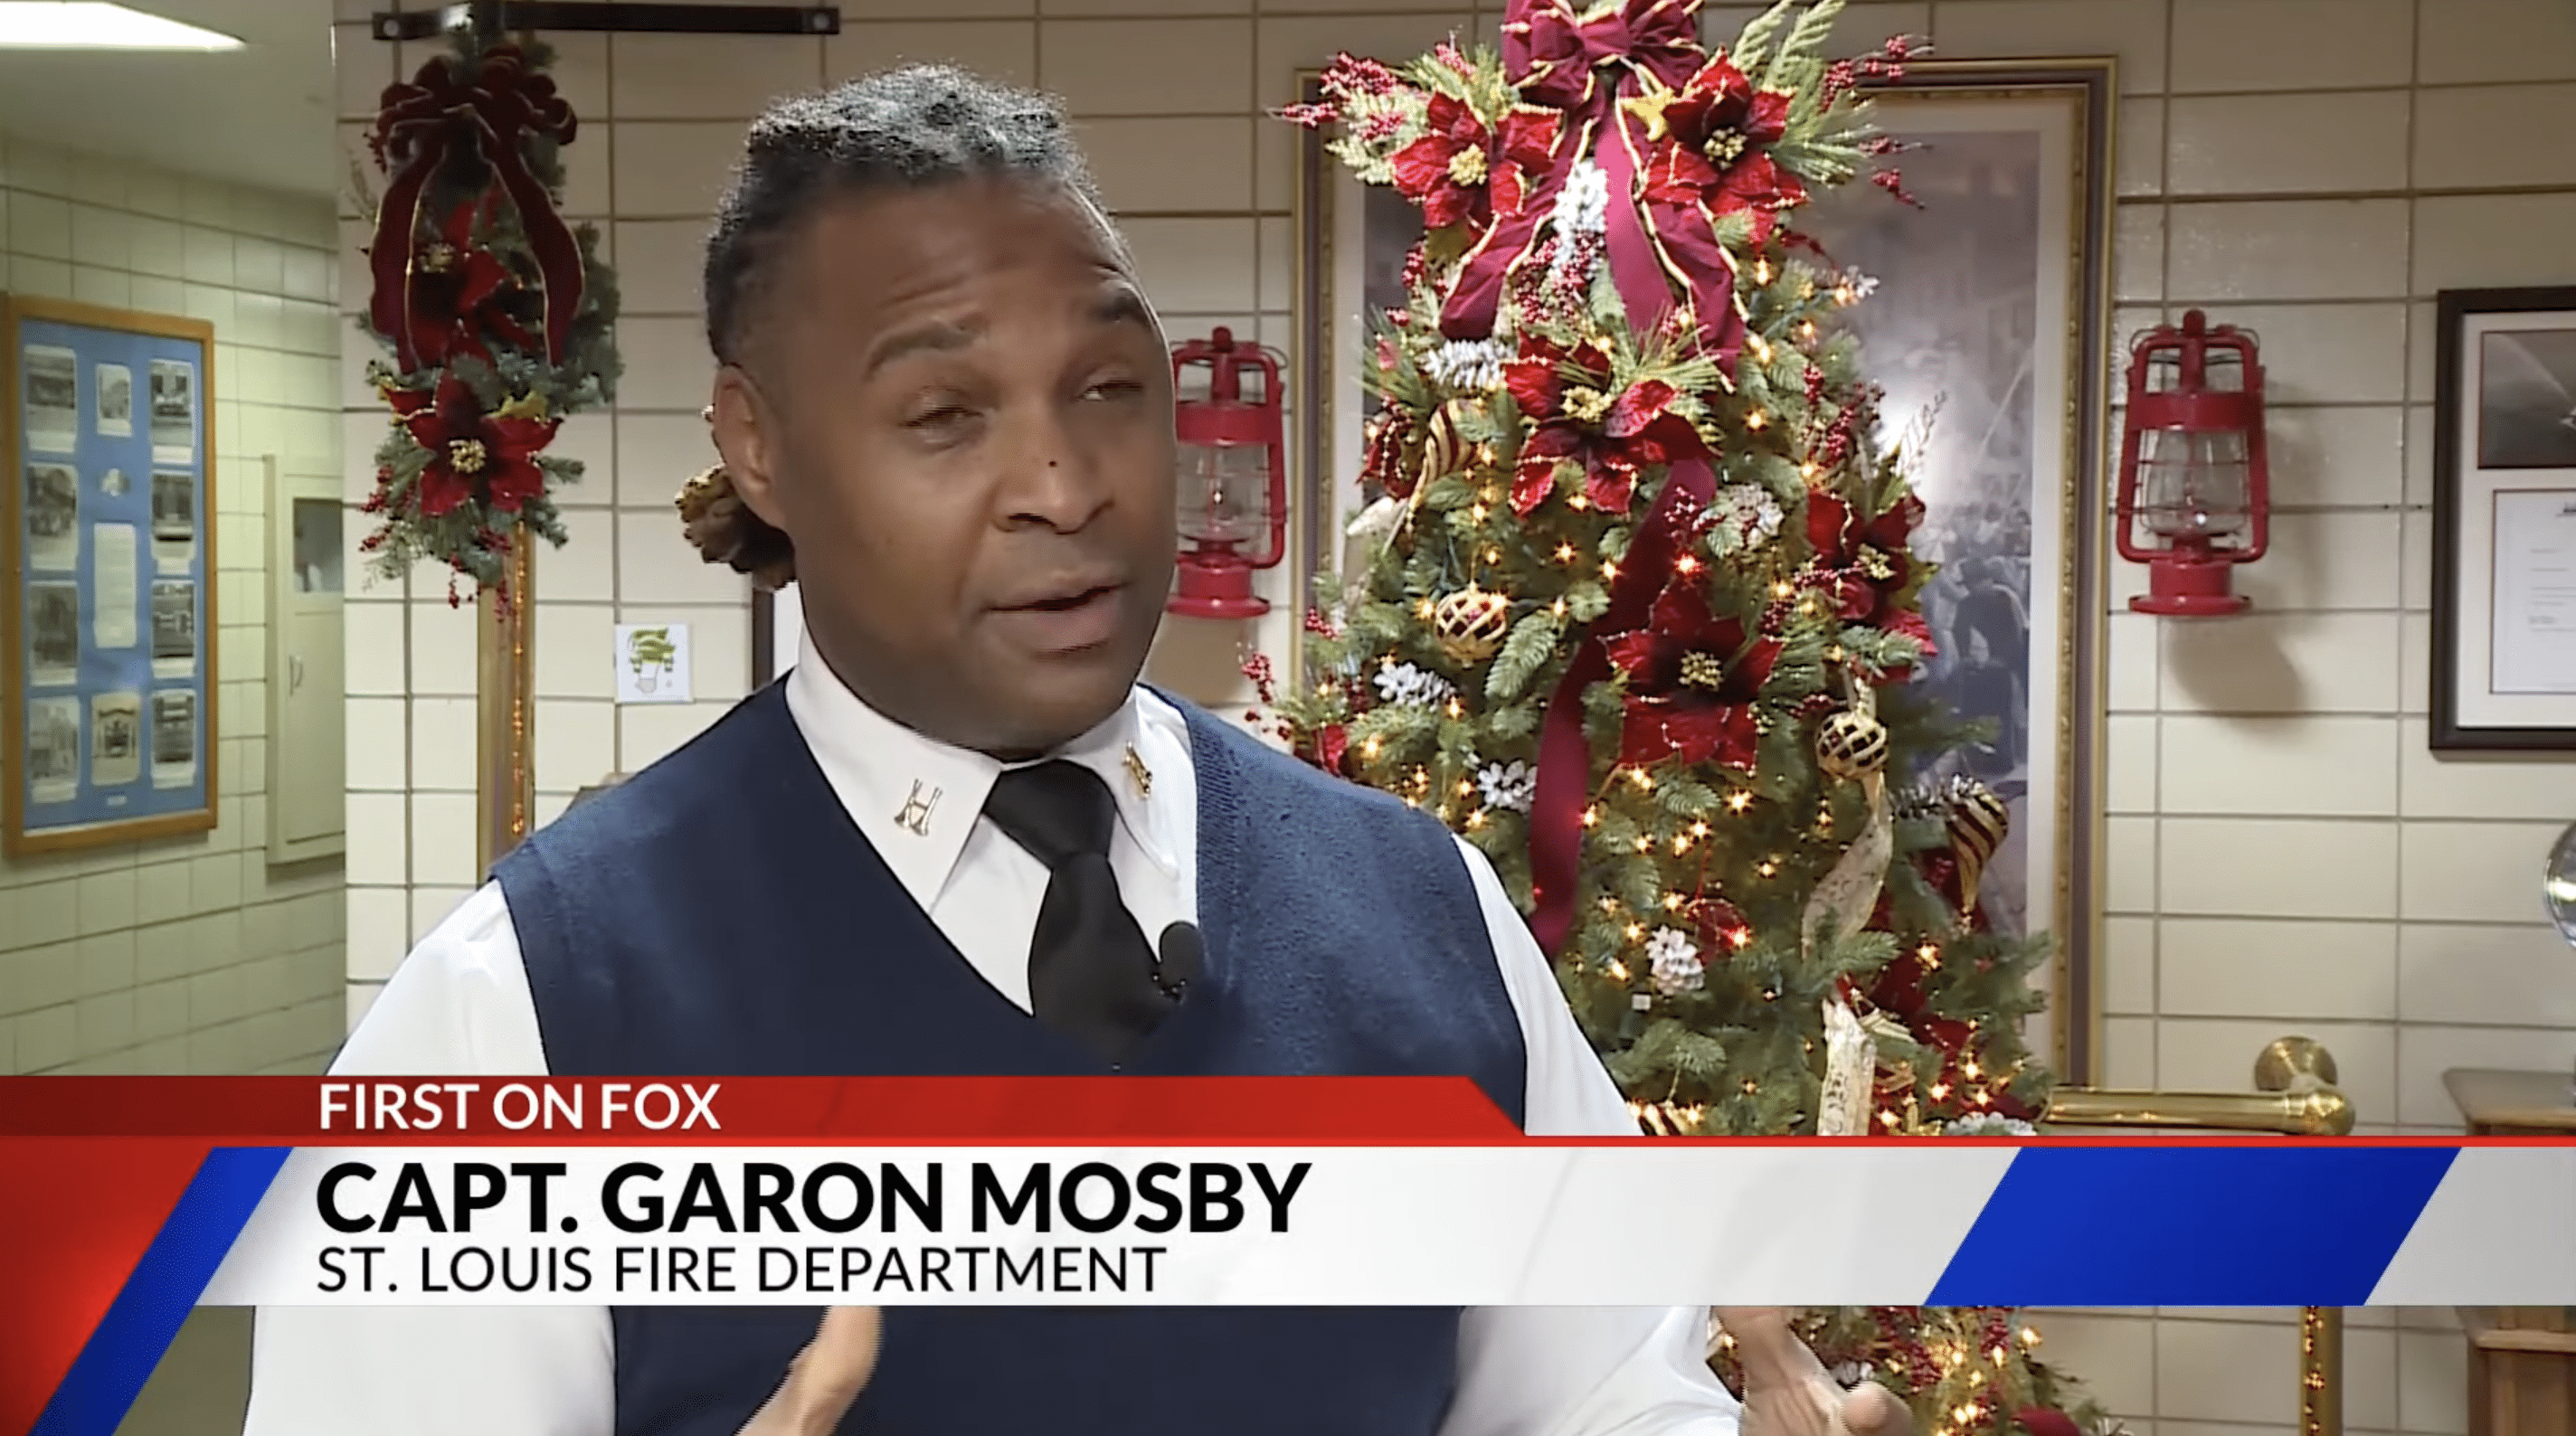 Le capitaine Garon Mosby du service d'incendie de Saint-Louis a apprécié l'acte héroïque de Merriweather. | Photo : youtube.com/FOX 2 St. Louis